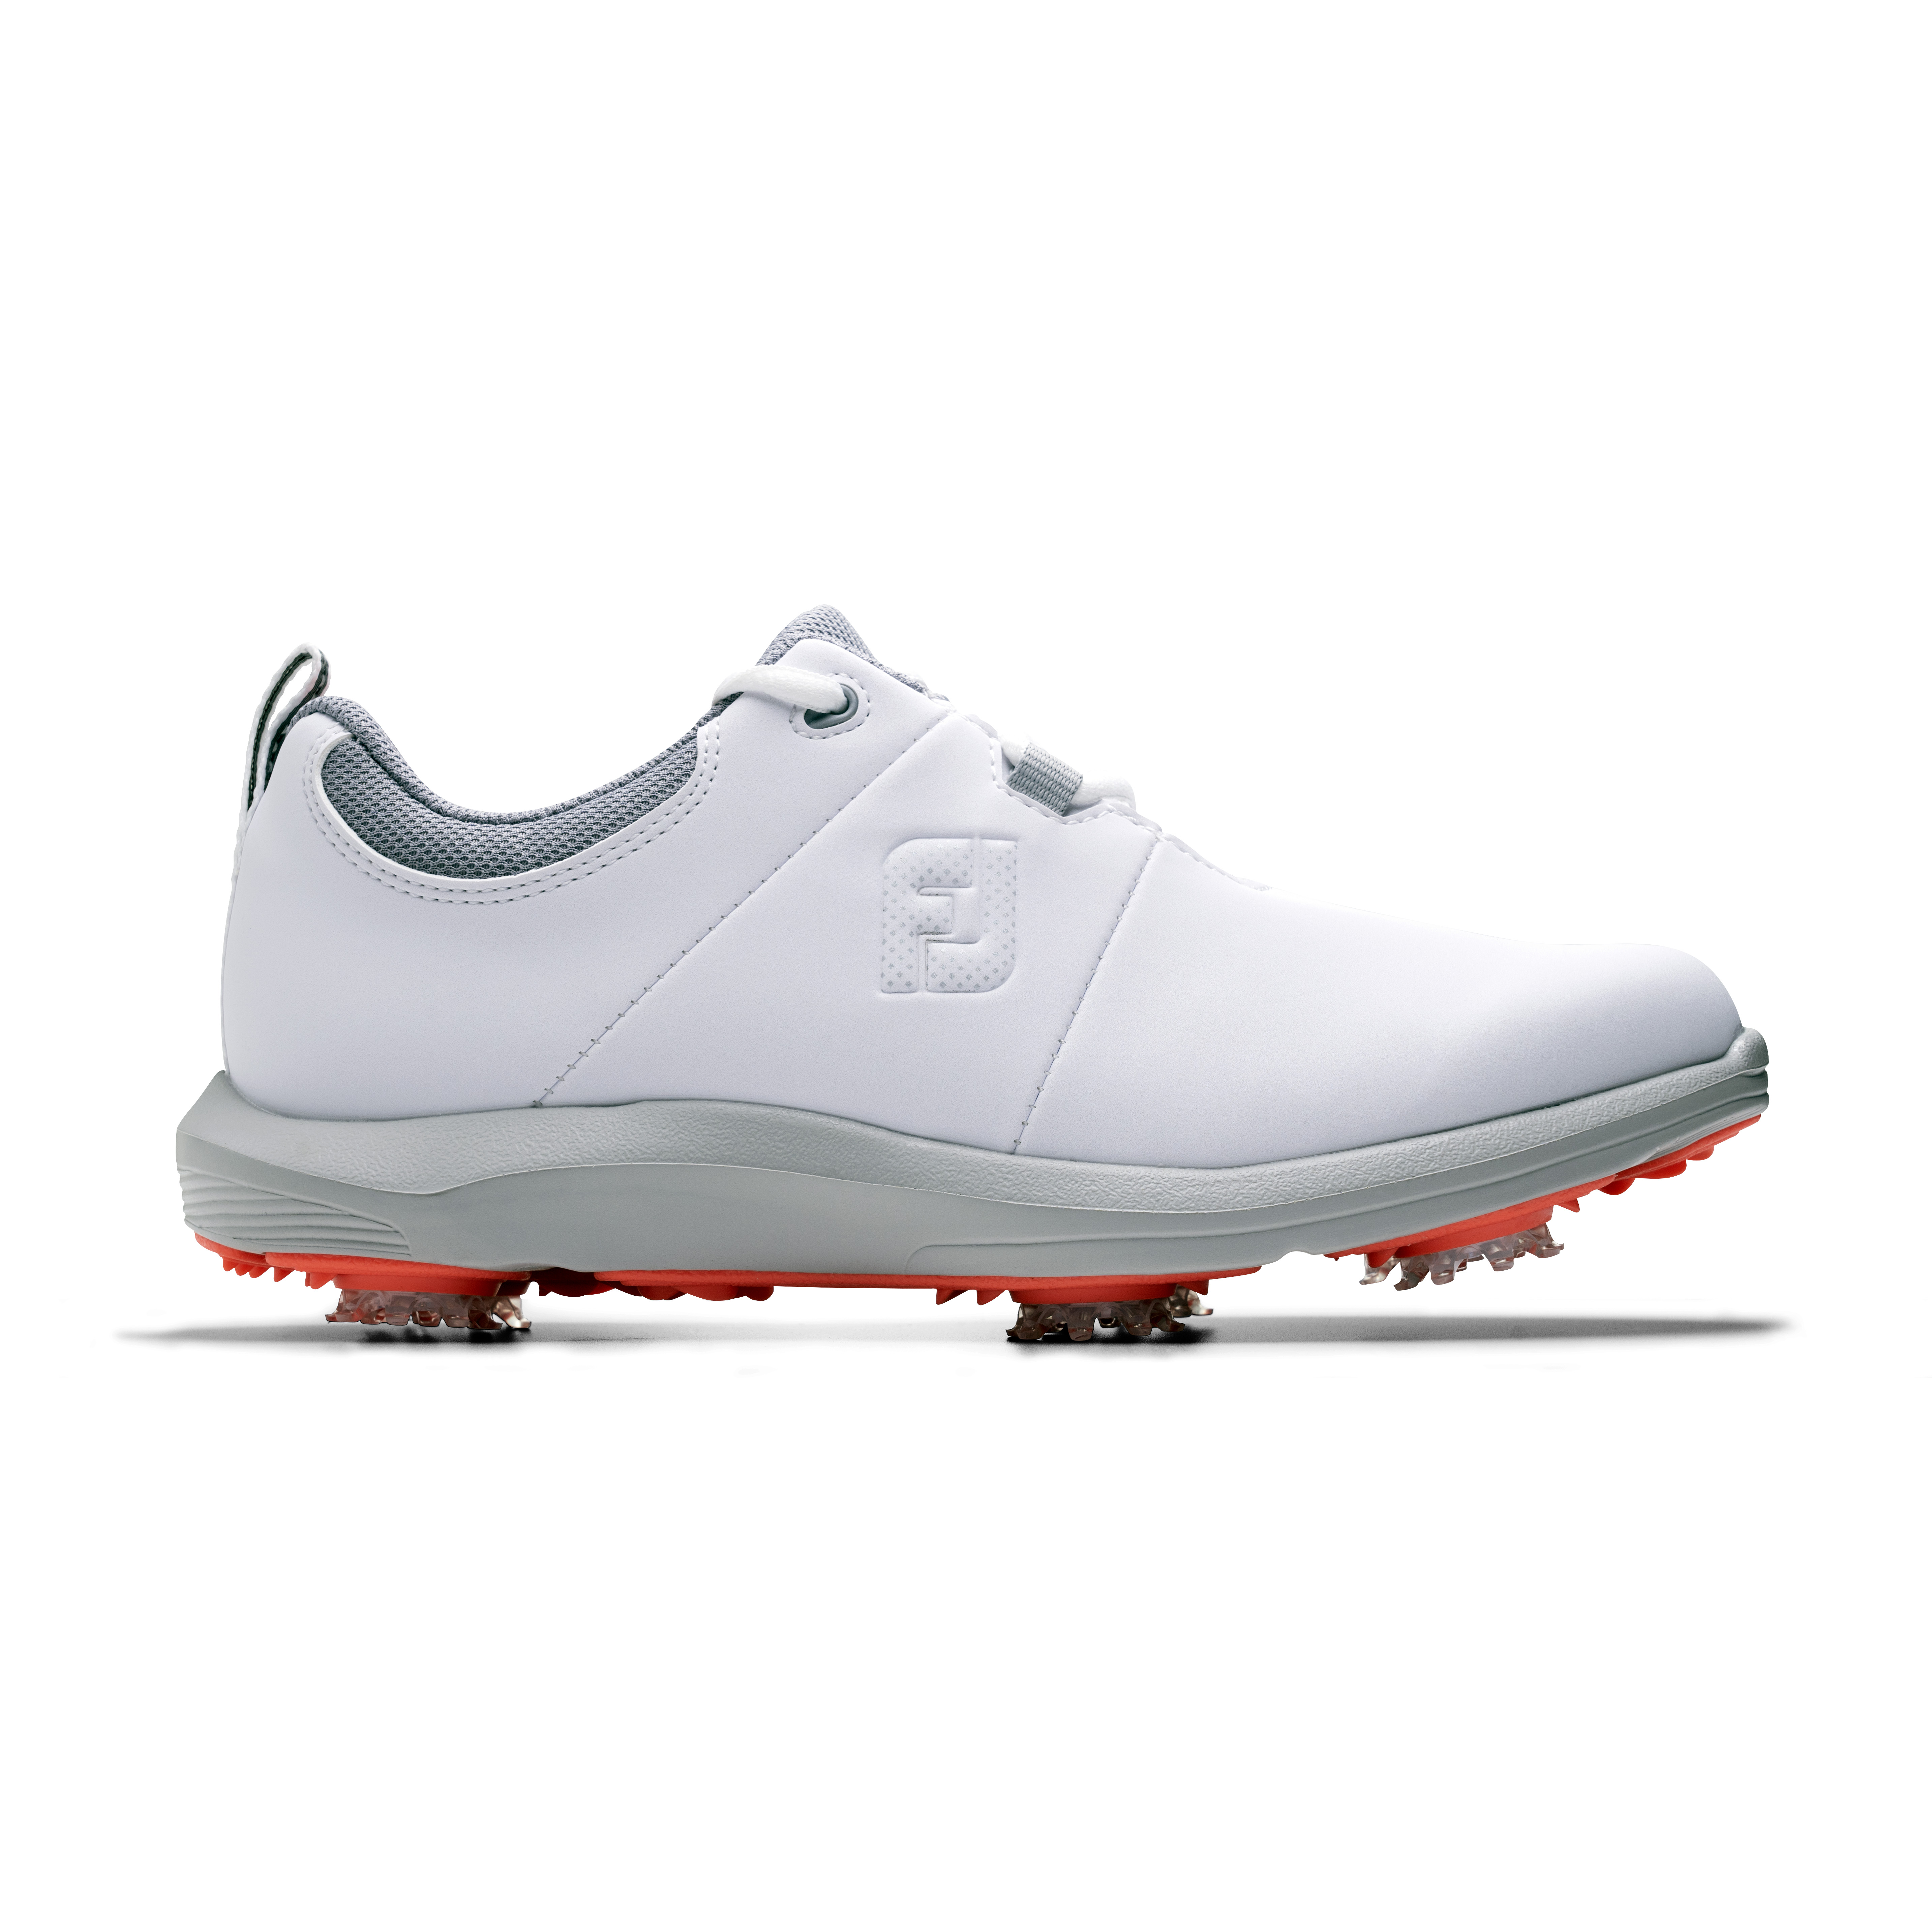 FootJoy eComfort dámské golfové boty, bílé/šedé, vel. 4,5 UK DOPRODEJ